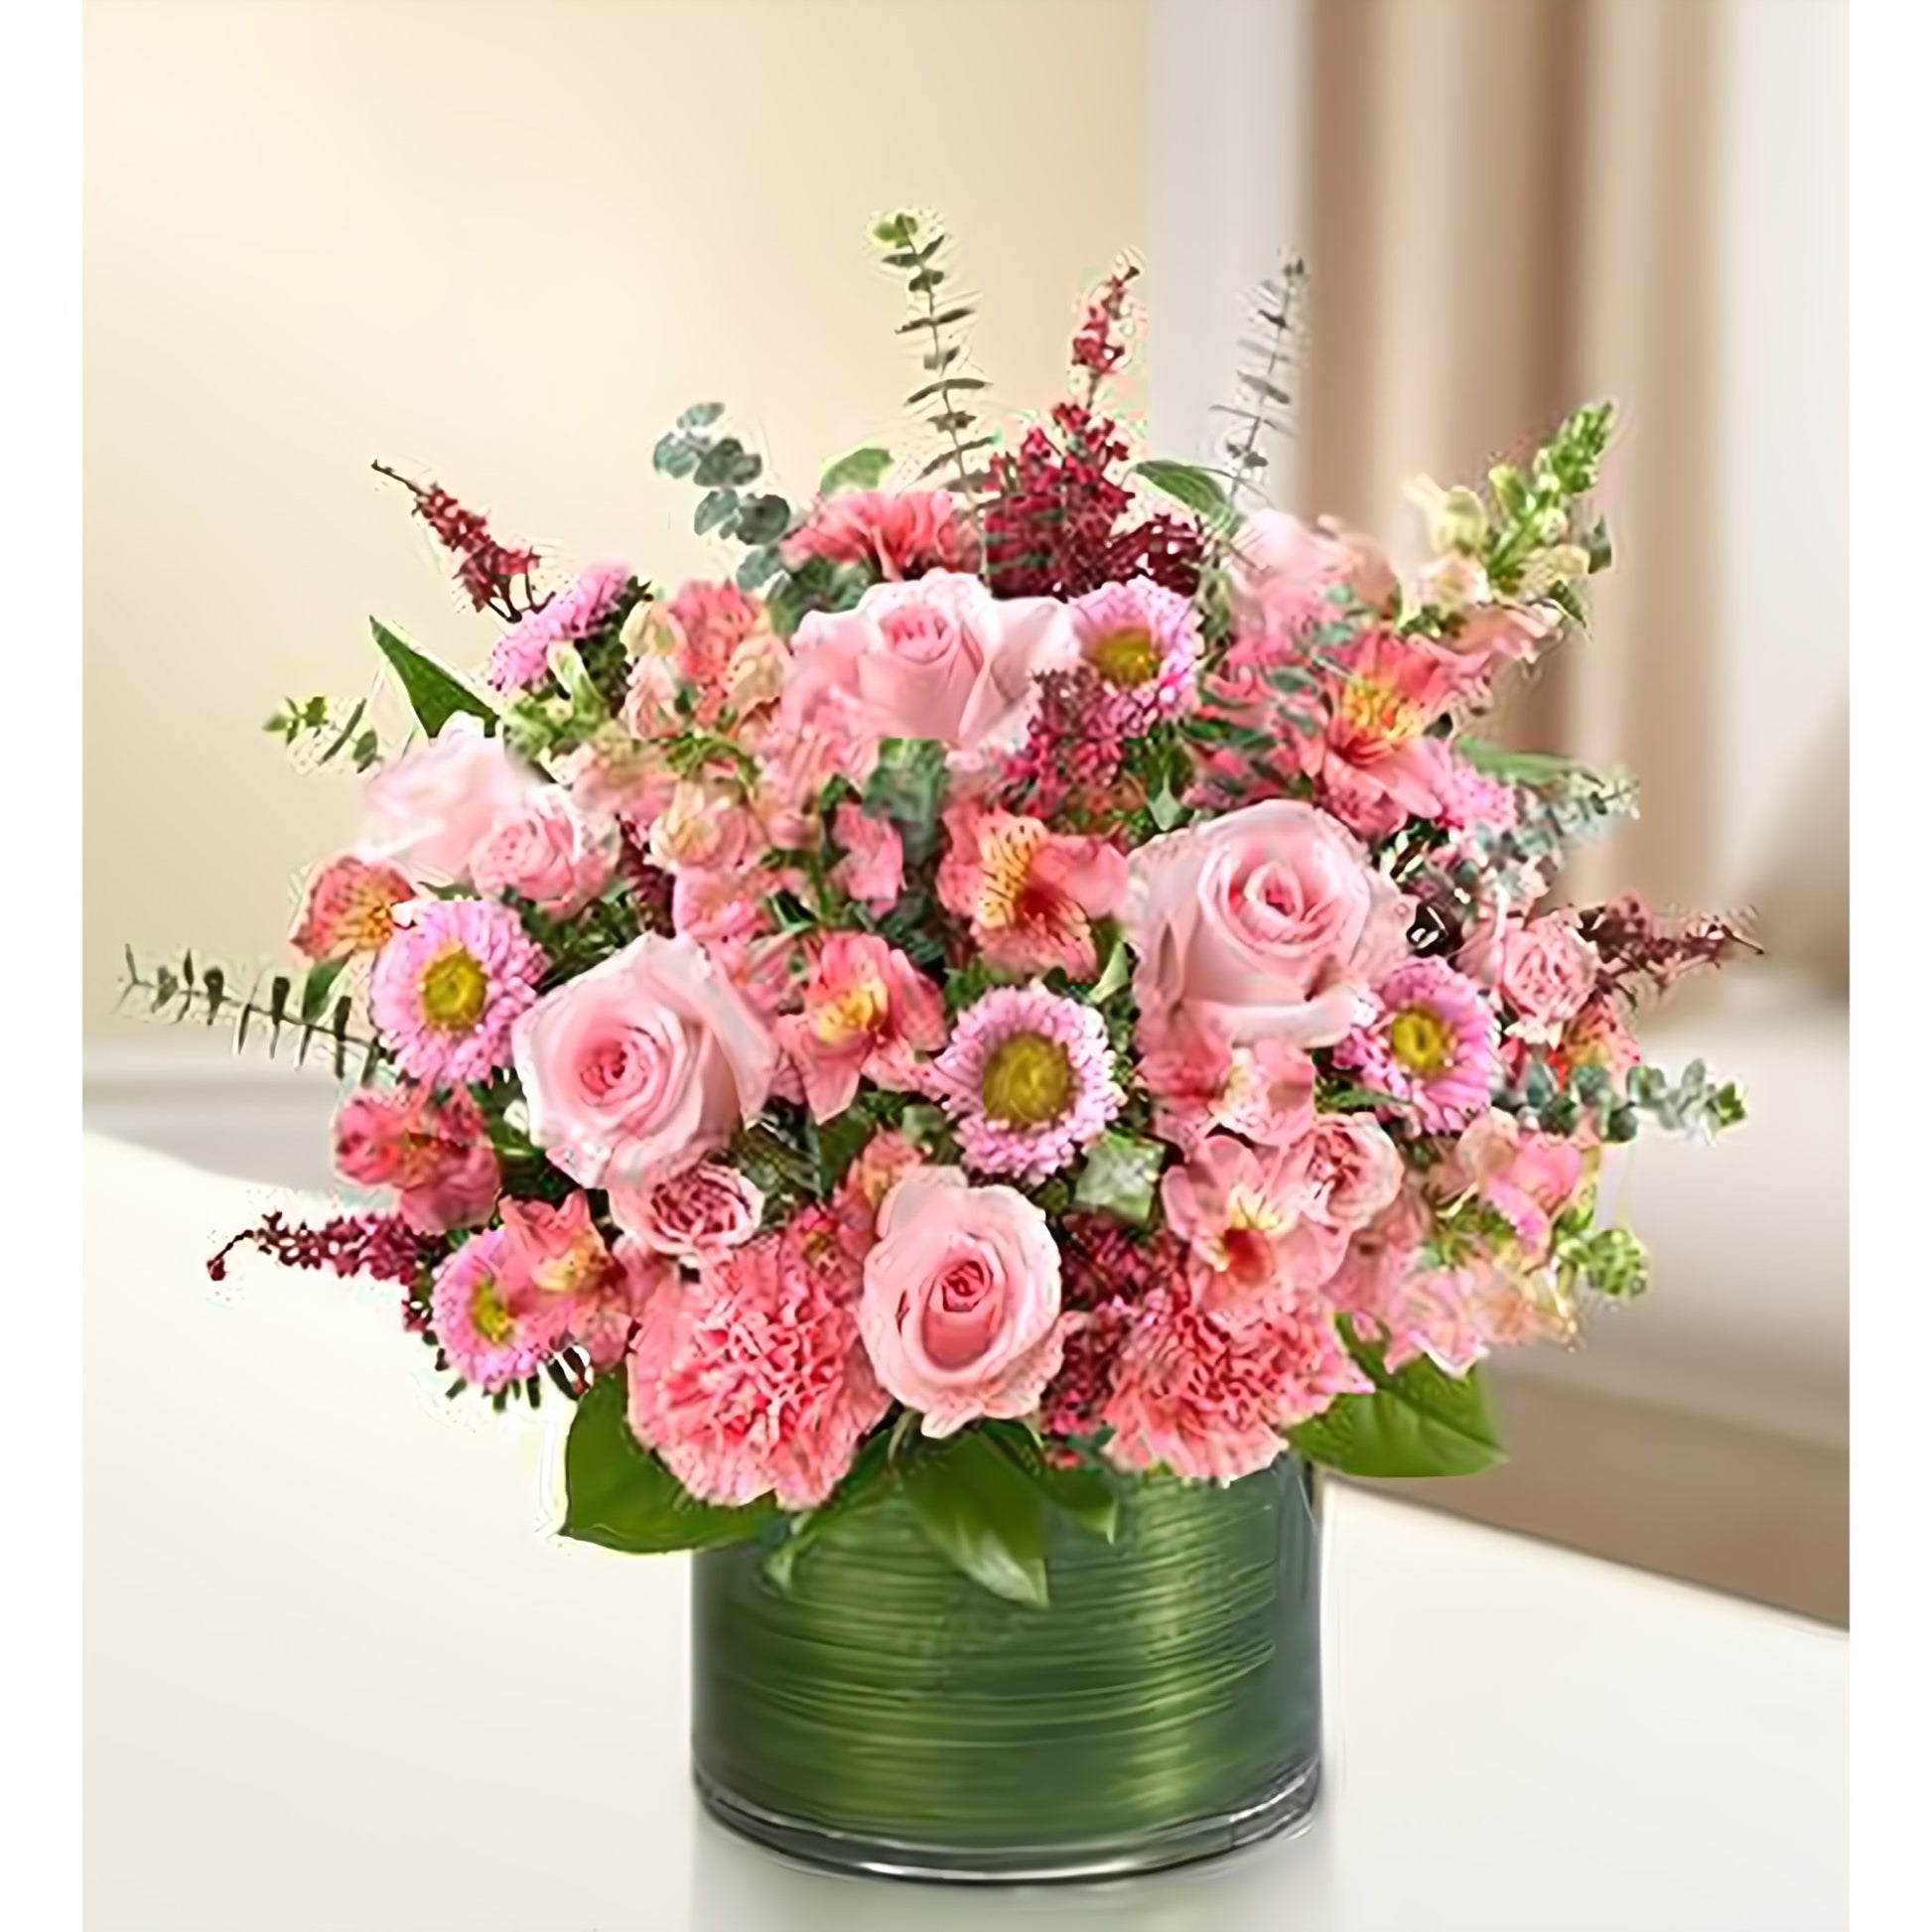 Cherished Memories - All Pink - Funeral > Vase Arrangements - Queens Flower Delivery